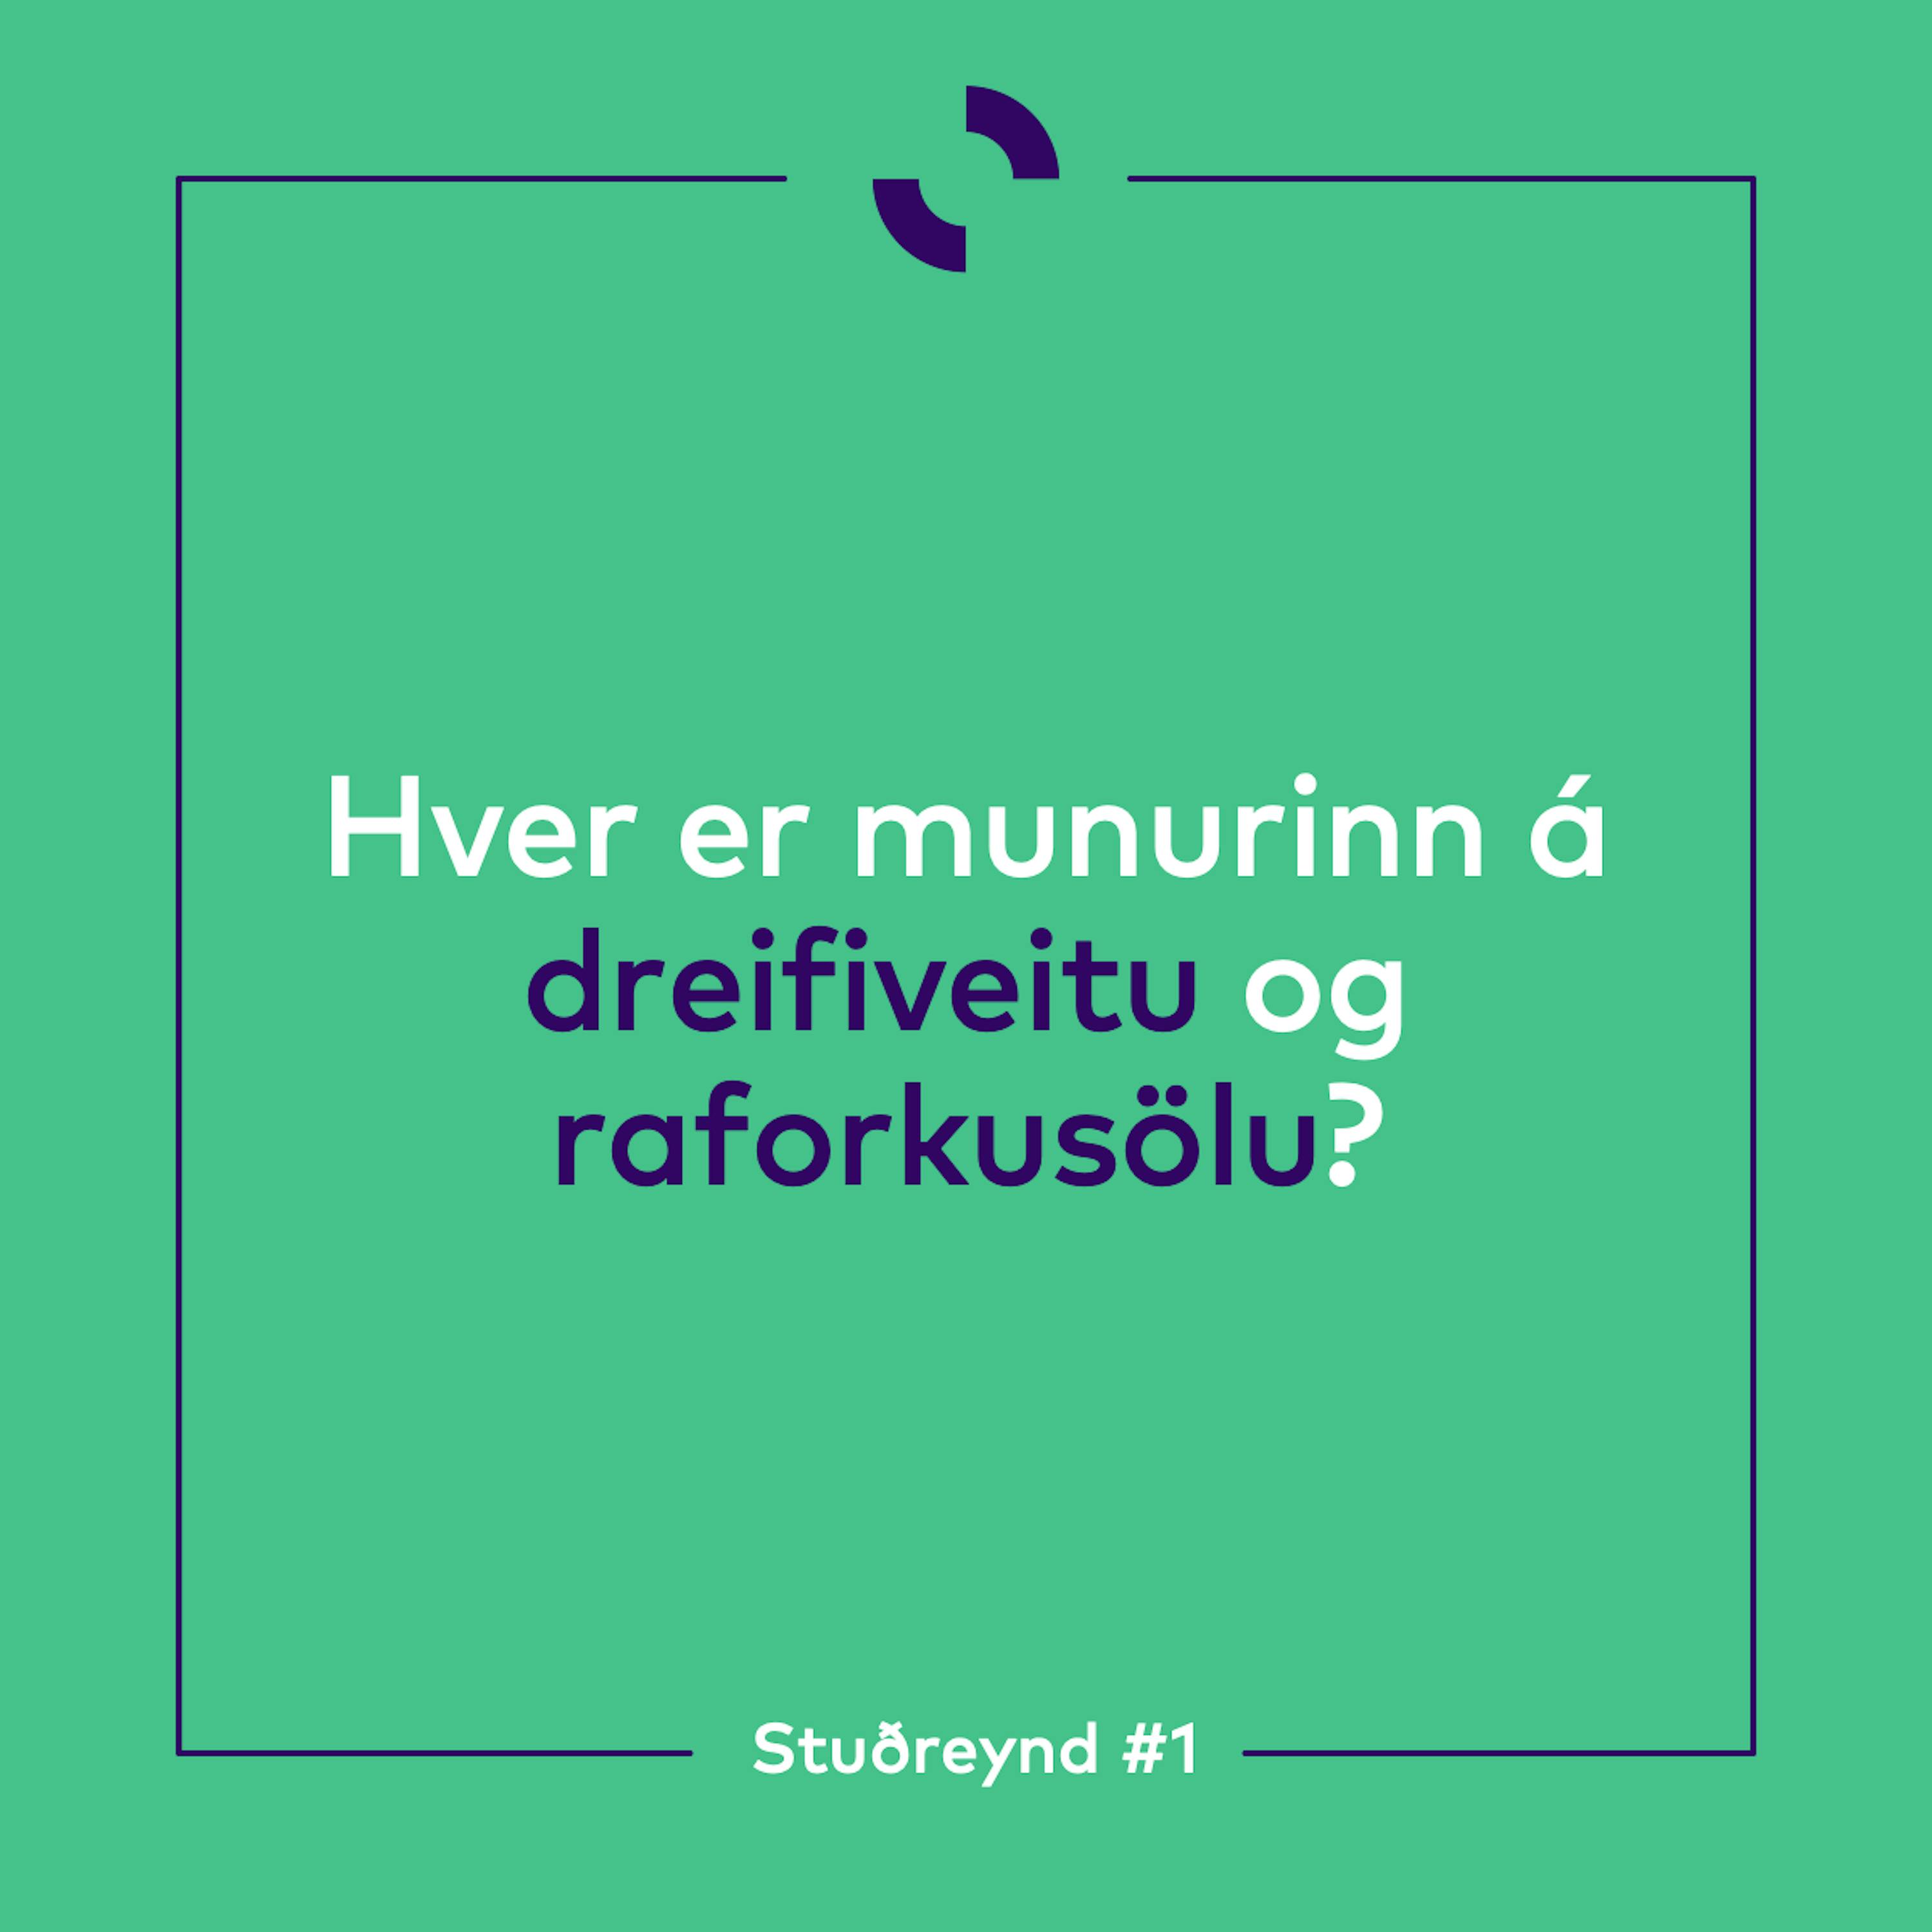 Stuðreyndir - fræðsluefni frá Orkusölunni